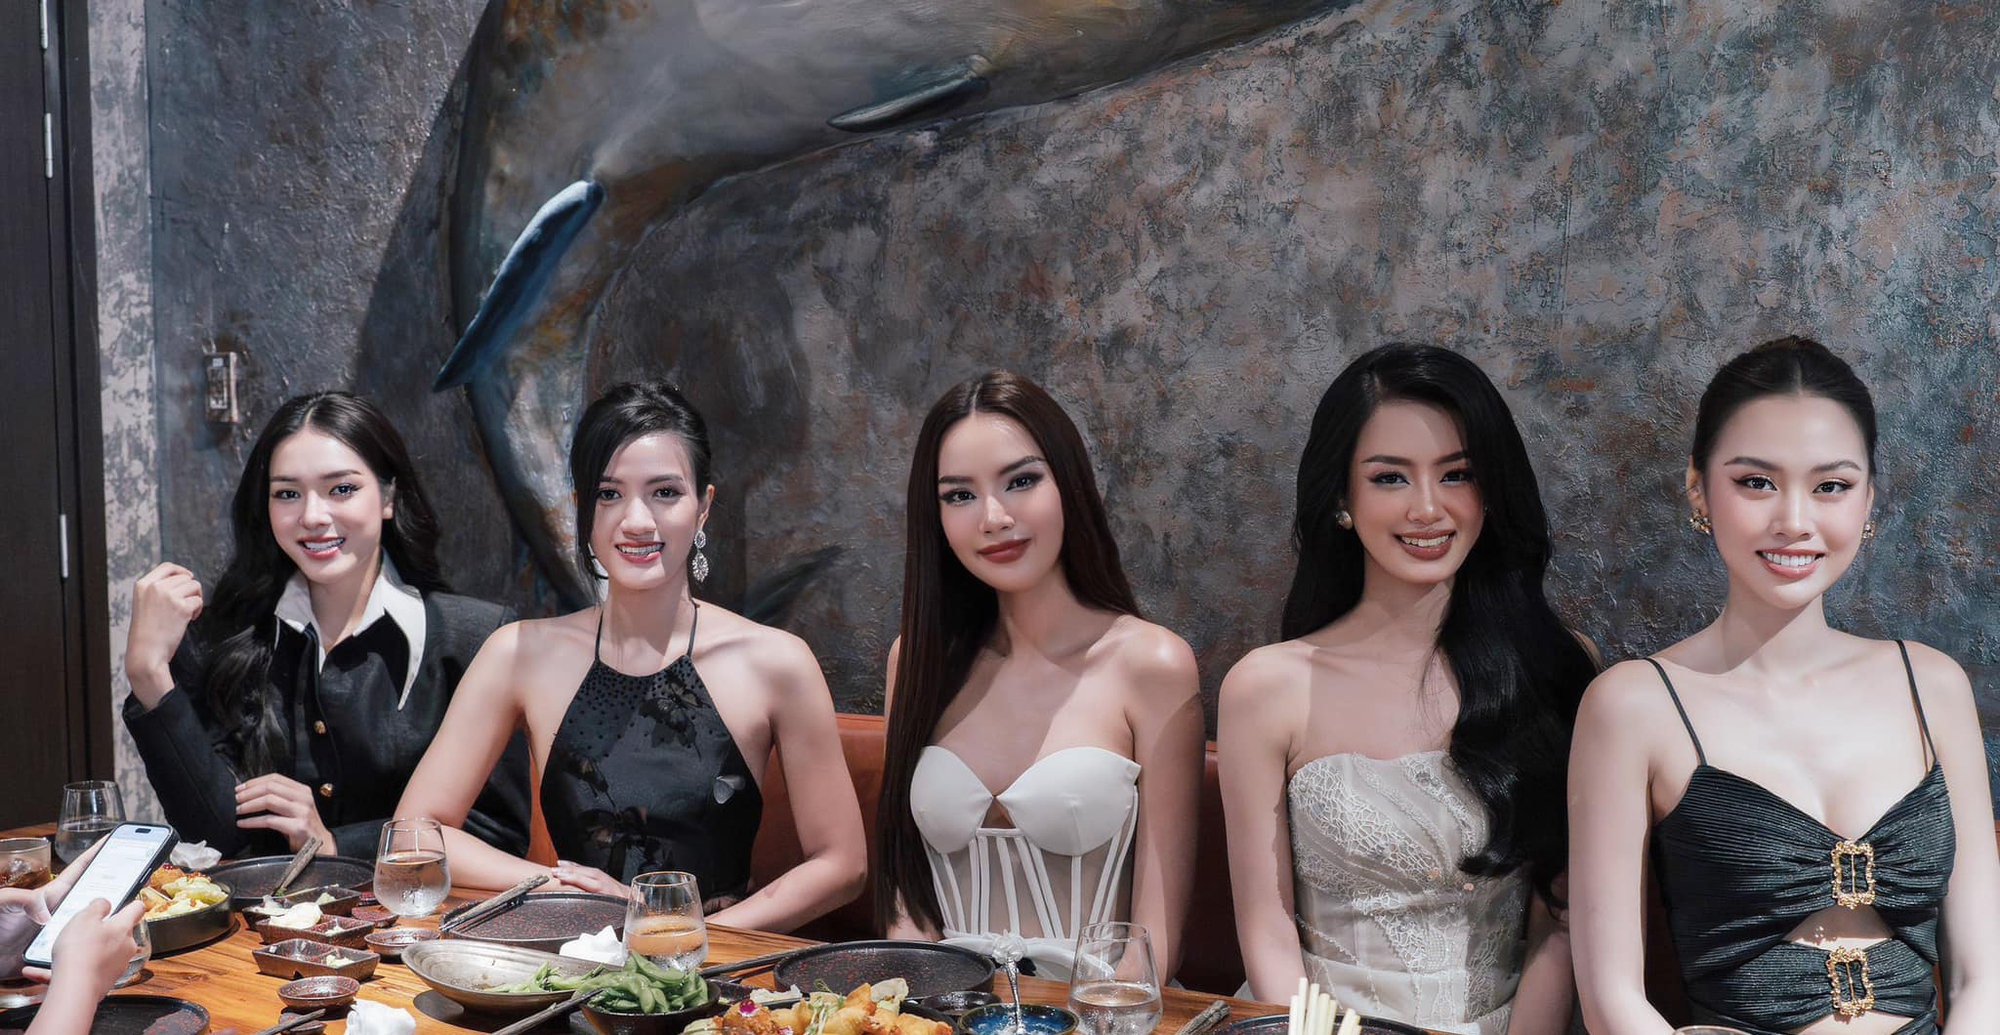 Khung ảnh bùng nổ nhan sắc của Top 5 Miss Grand Vietnam, Lê Hoàng Phương và Bùi Khánh Linh so kè visual căng đét - Ảnh 2.